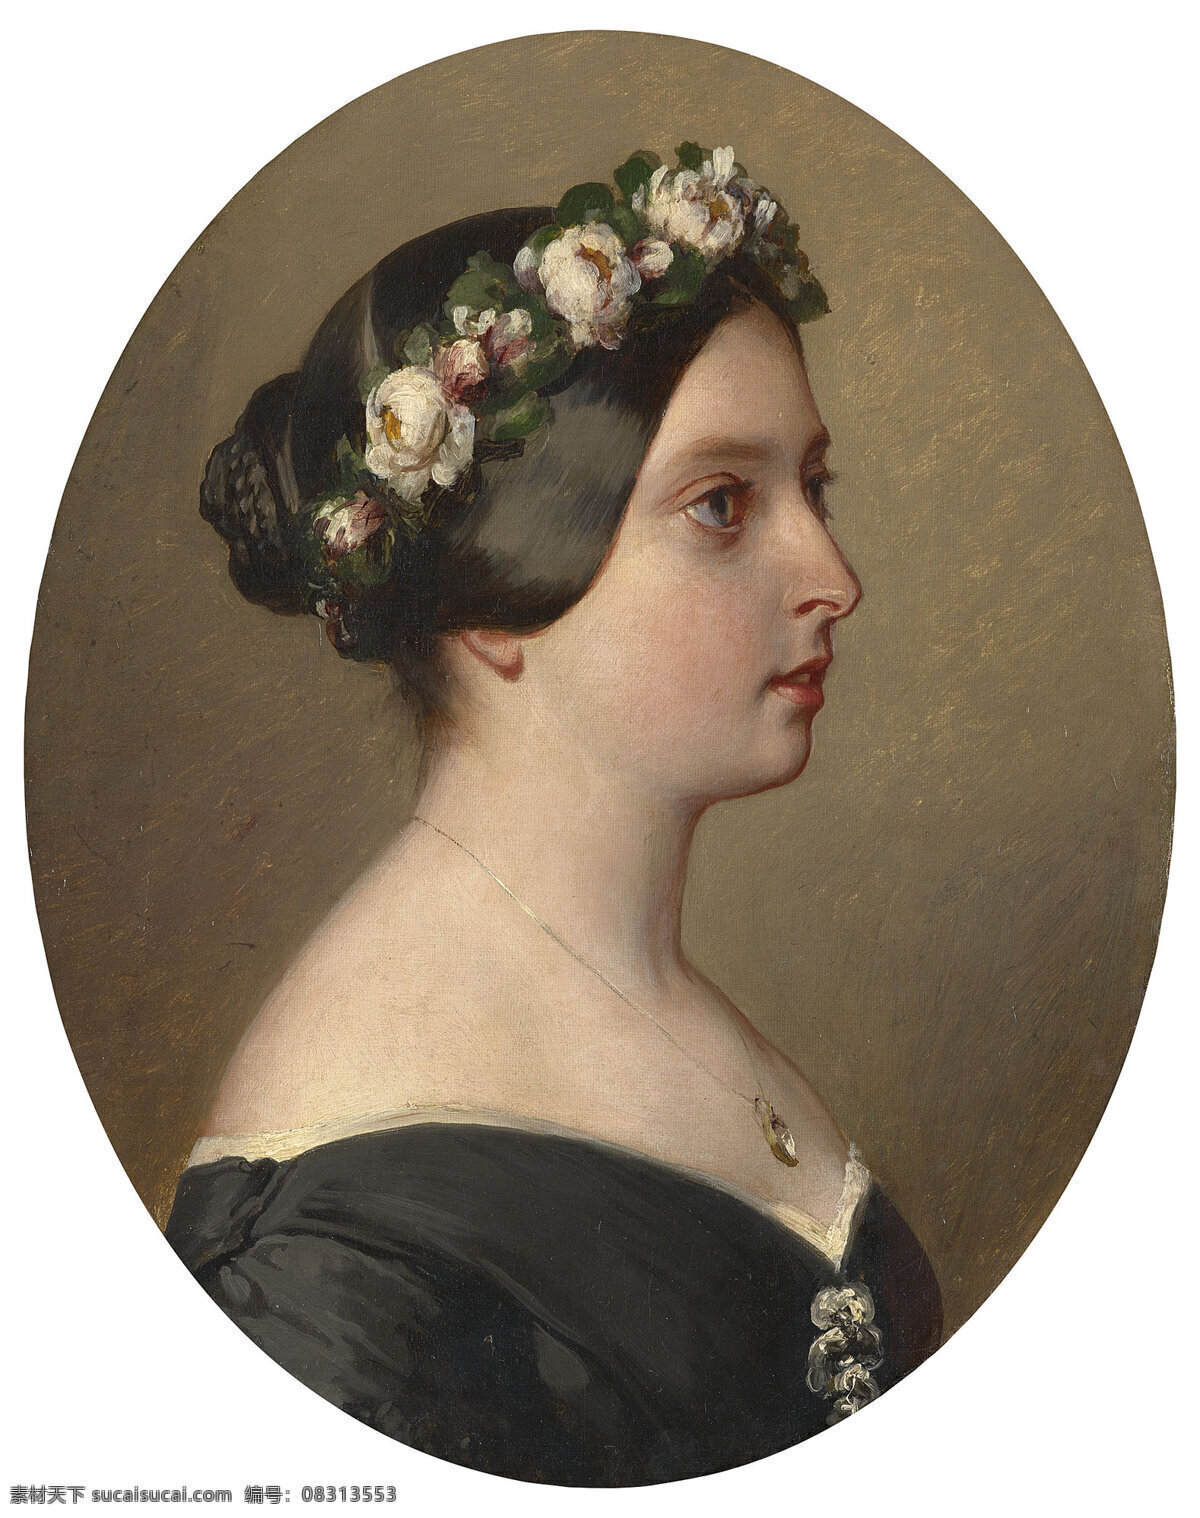 温特 哈尔特 作品 萨维尔183 弗朗茨183 德国画家 1844年 维多利亚女王 半身画像 19世纪油画 油画 文化艺术 绘画书法